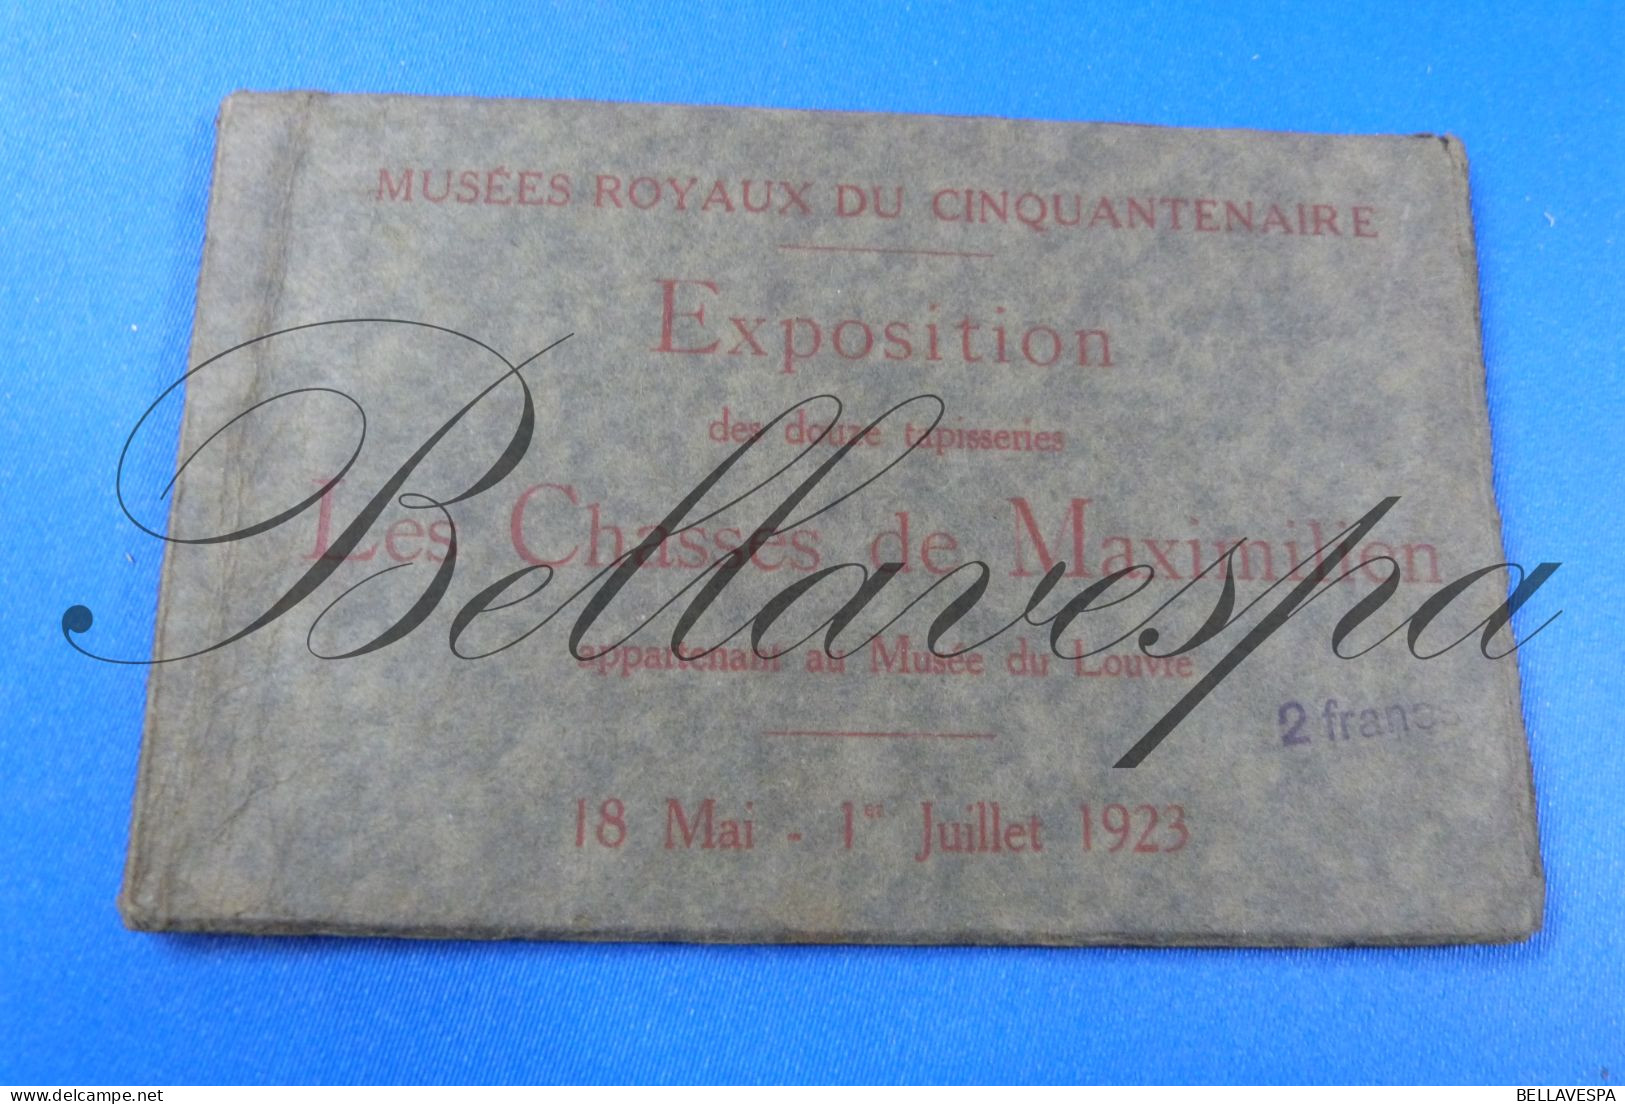 Musées Royaux Expo Lot X 10 Cpa Wandtapijten Tapis Les Chasses De Maximilien  Bruxelles - Louvre 18 Mai -1 Jullet 1923 - Objets D'art